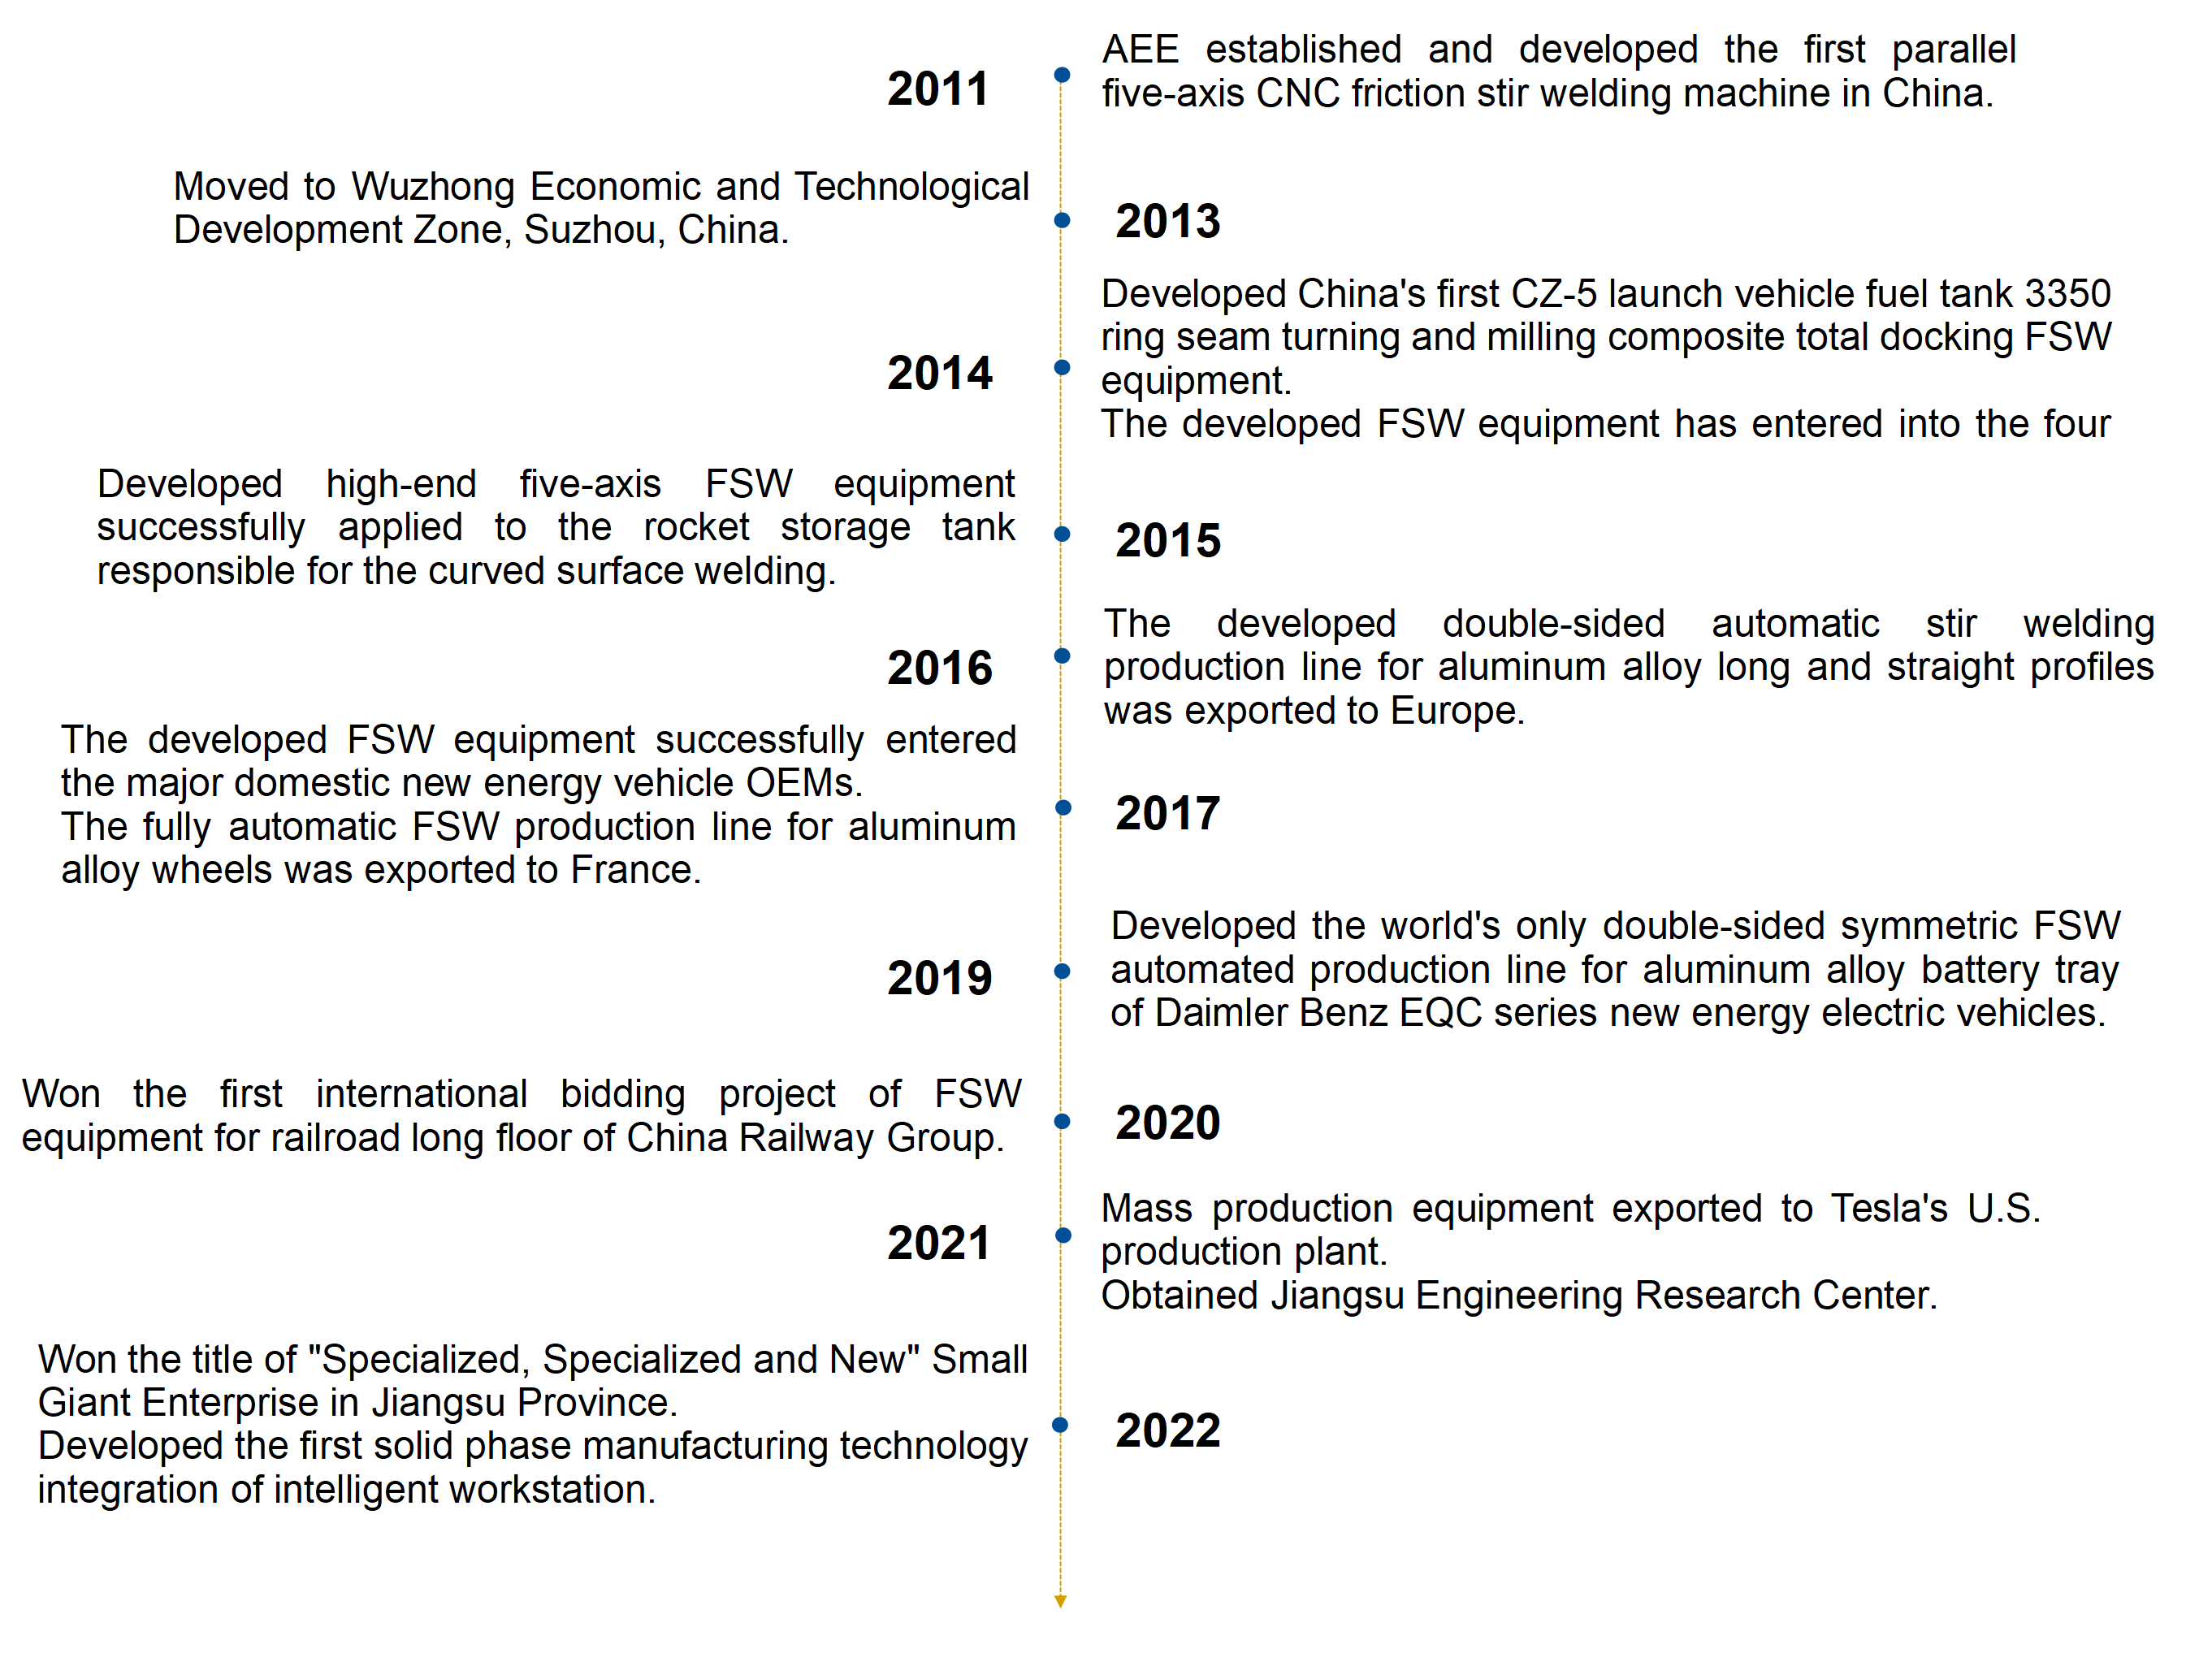 AEE Company History From 2011 to 2023